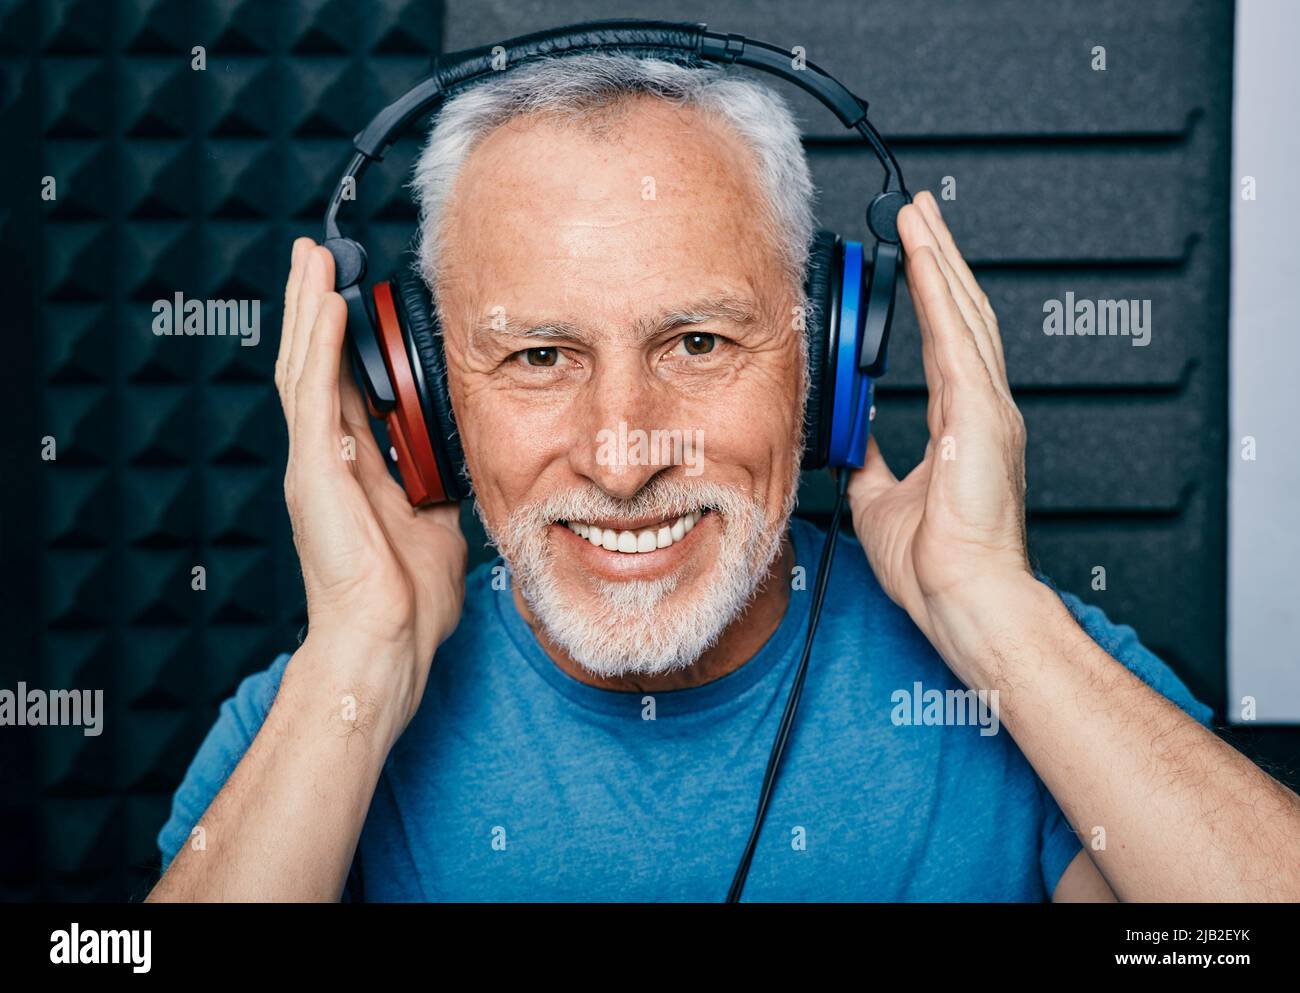 Behandlung von Hörverlust. Positiver älterer Mann, der Audiometriekopfhörer während des Hörtests und Audiogramms in einem speziellen Audioraum trägt Stockfoto